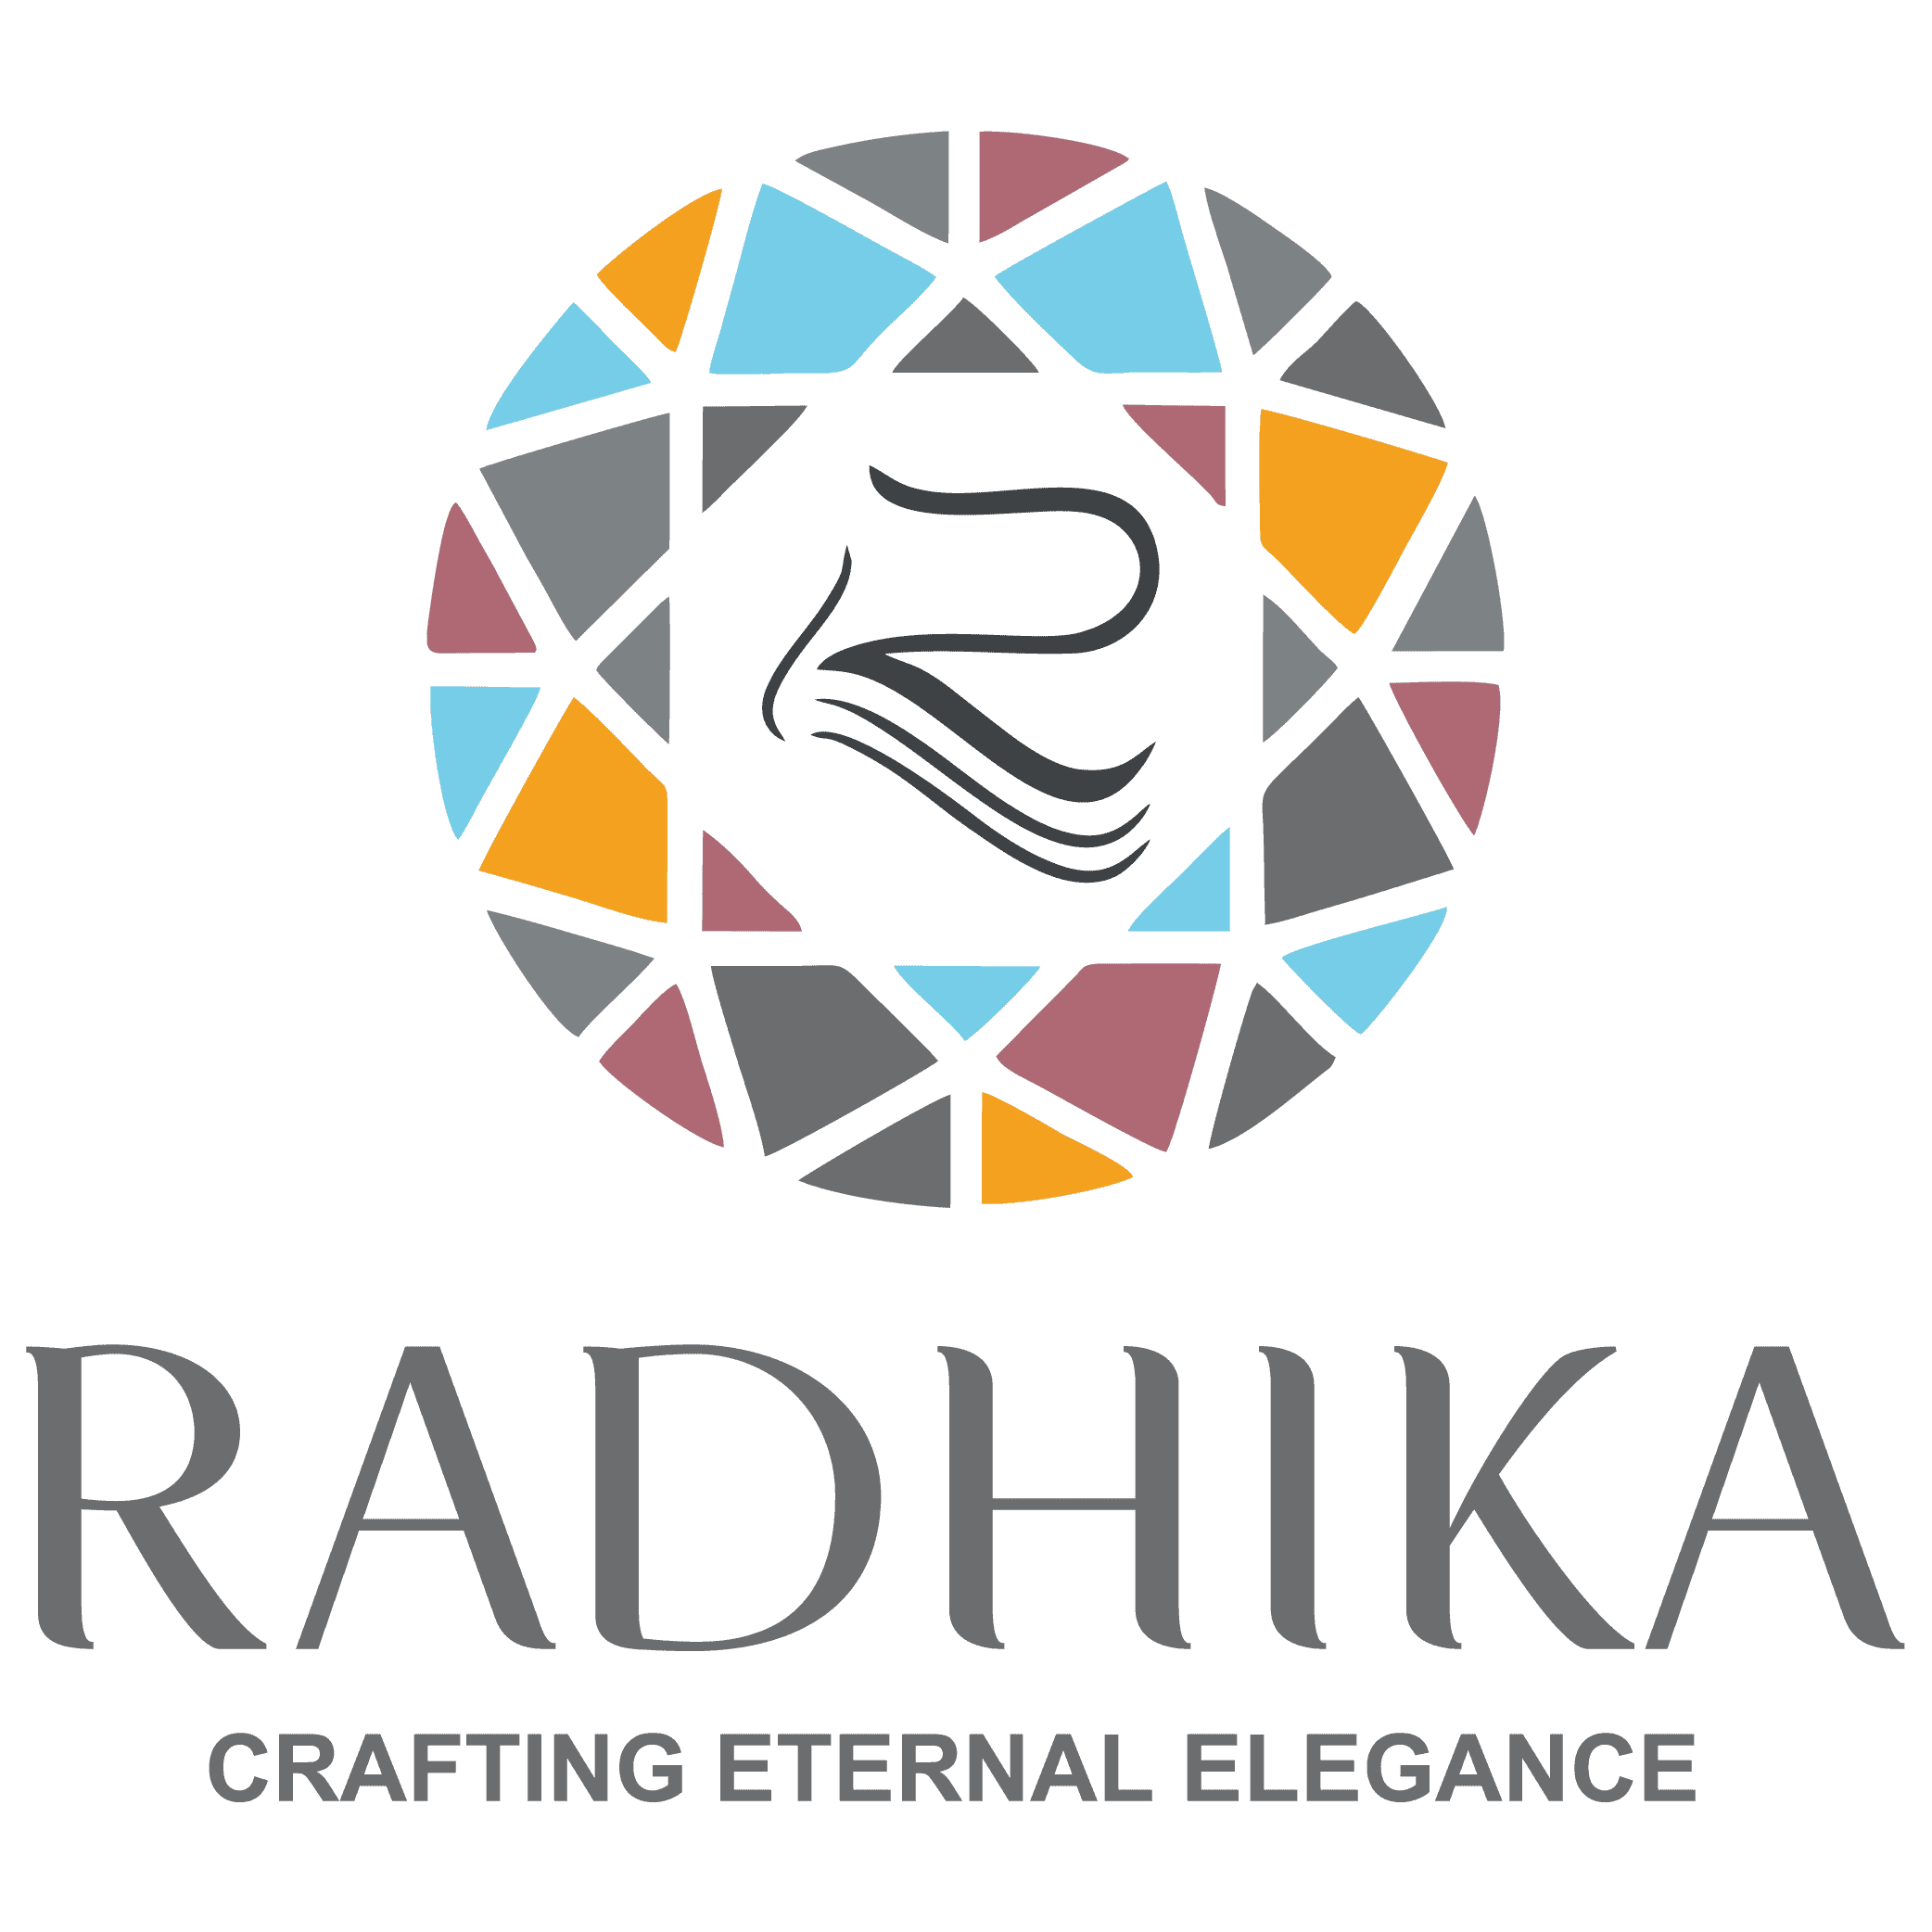 Radhika crafting eternal elegance logo